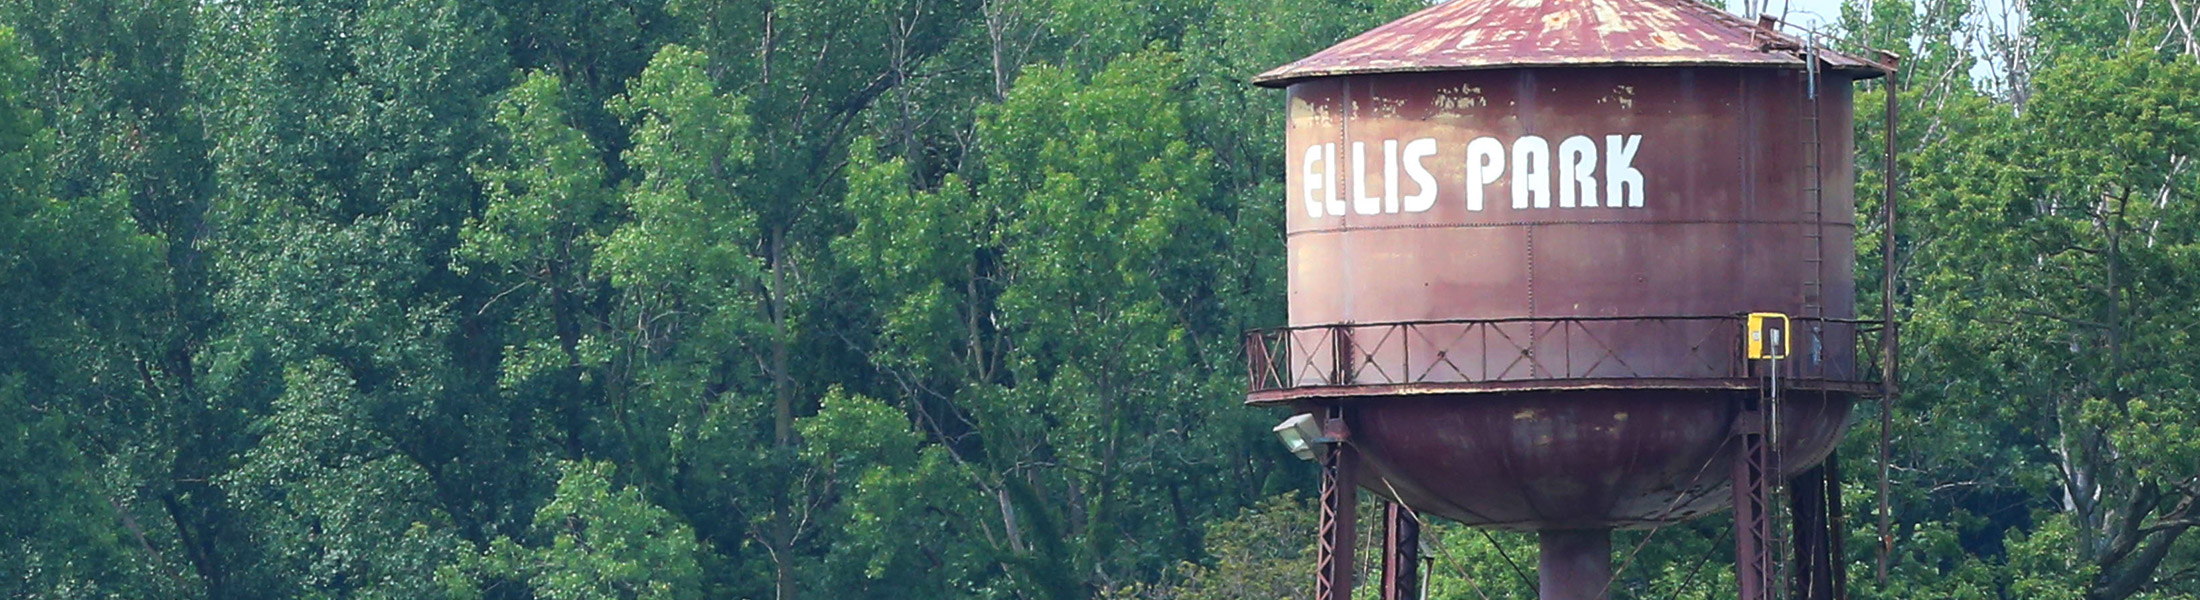 Ellis Park water tower